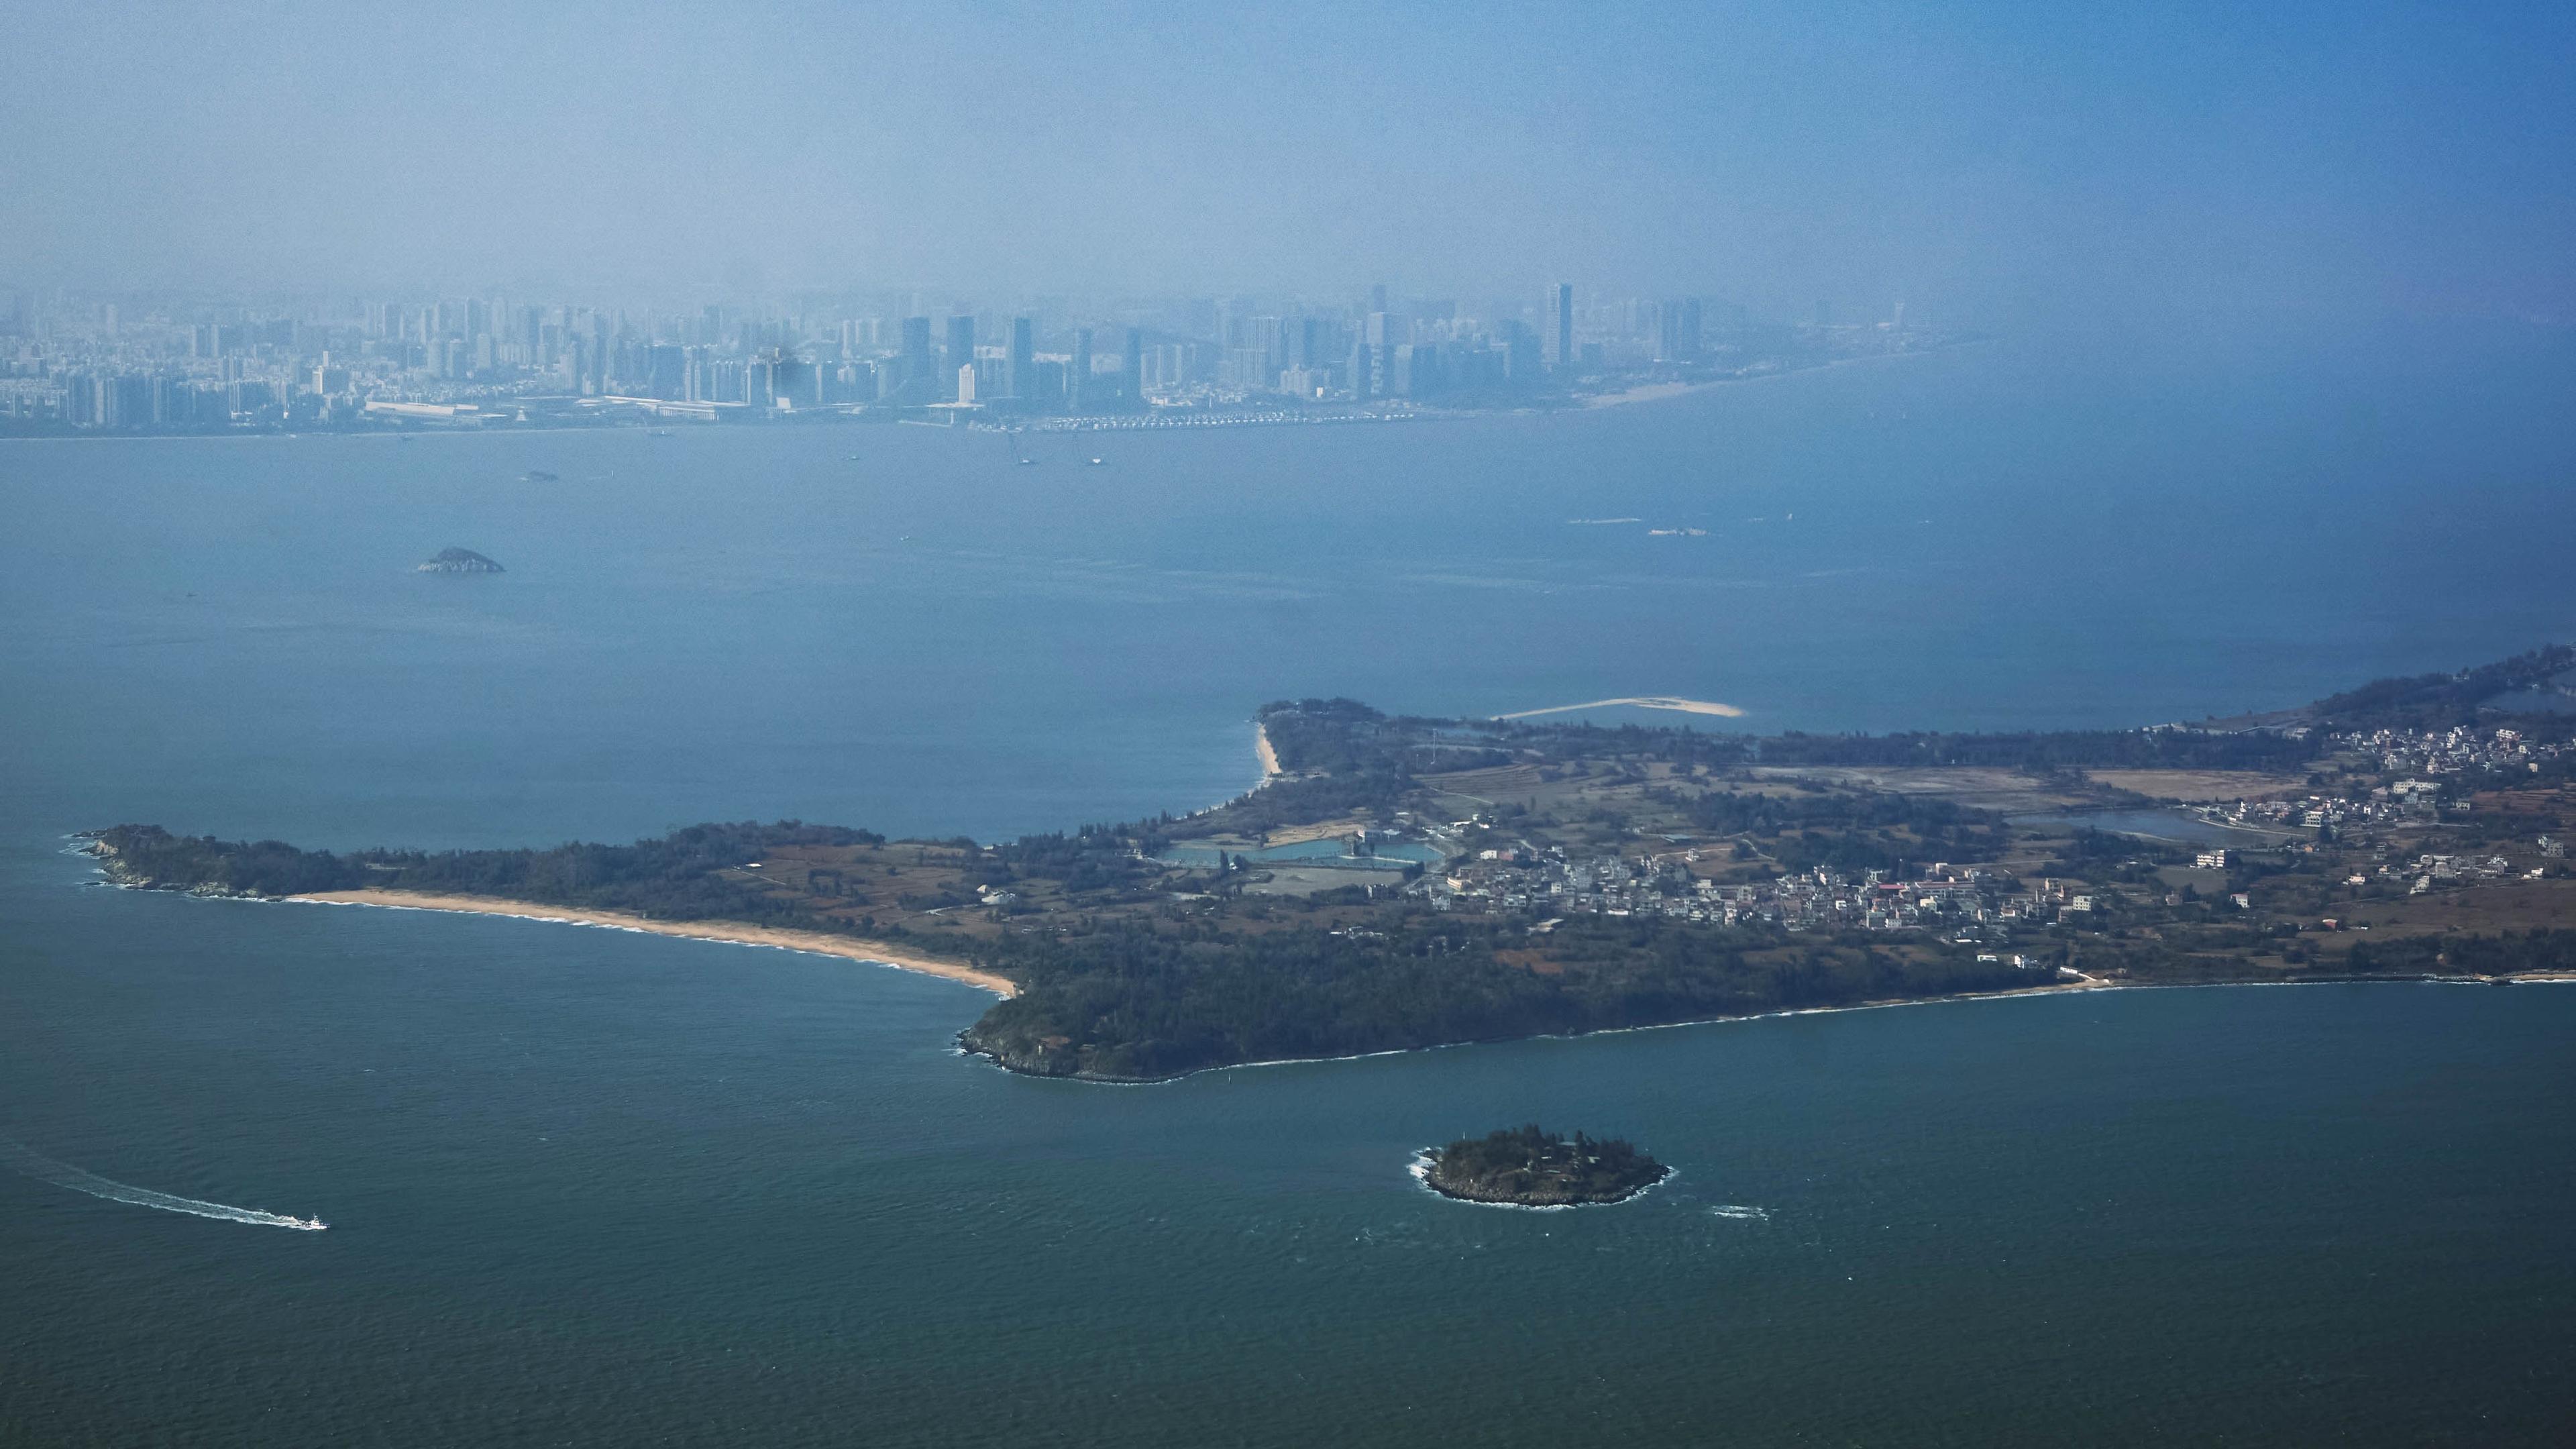 Vy över Sydkinesiska havet mellan staden Xiamen i Kina och öarna Kinmen i Taiwan. Amerikanska specialstyrkor övar här tillsammans med taiwaneser. Foto: An Rong Xu/Getty Images